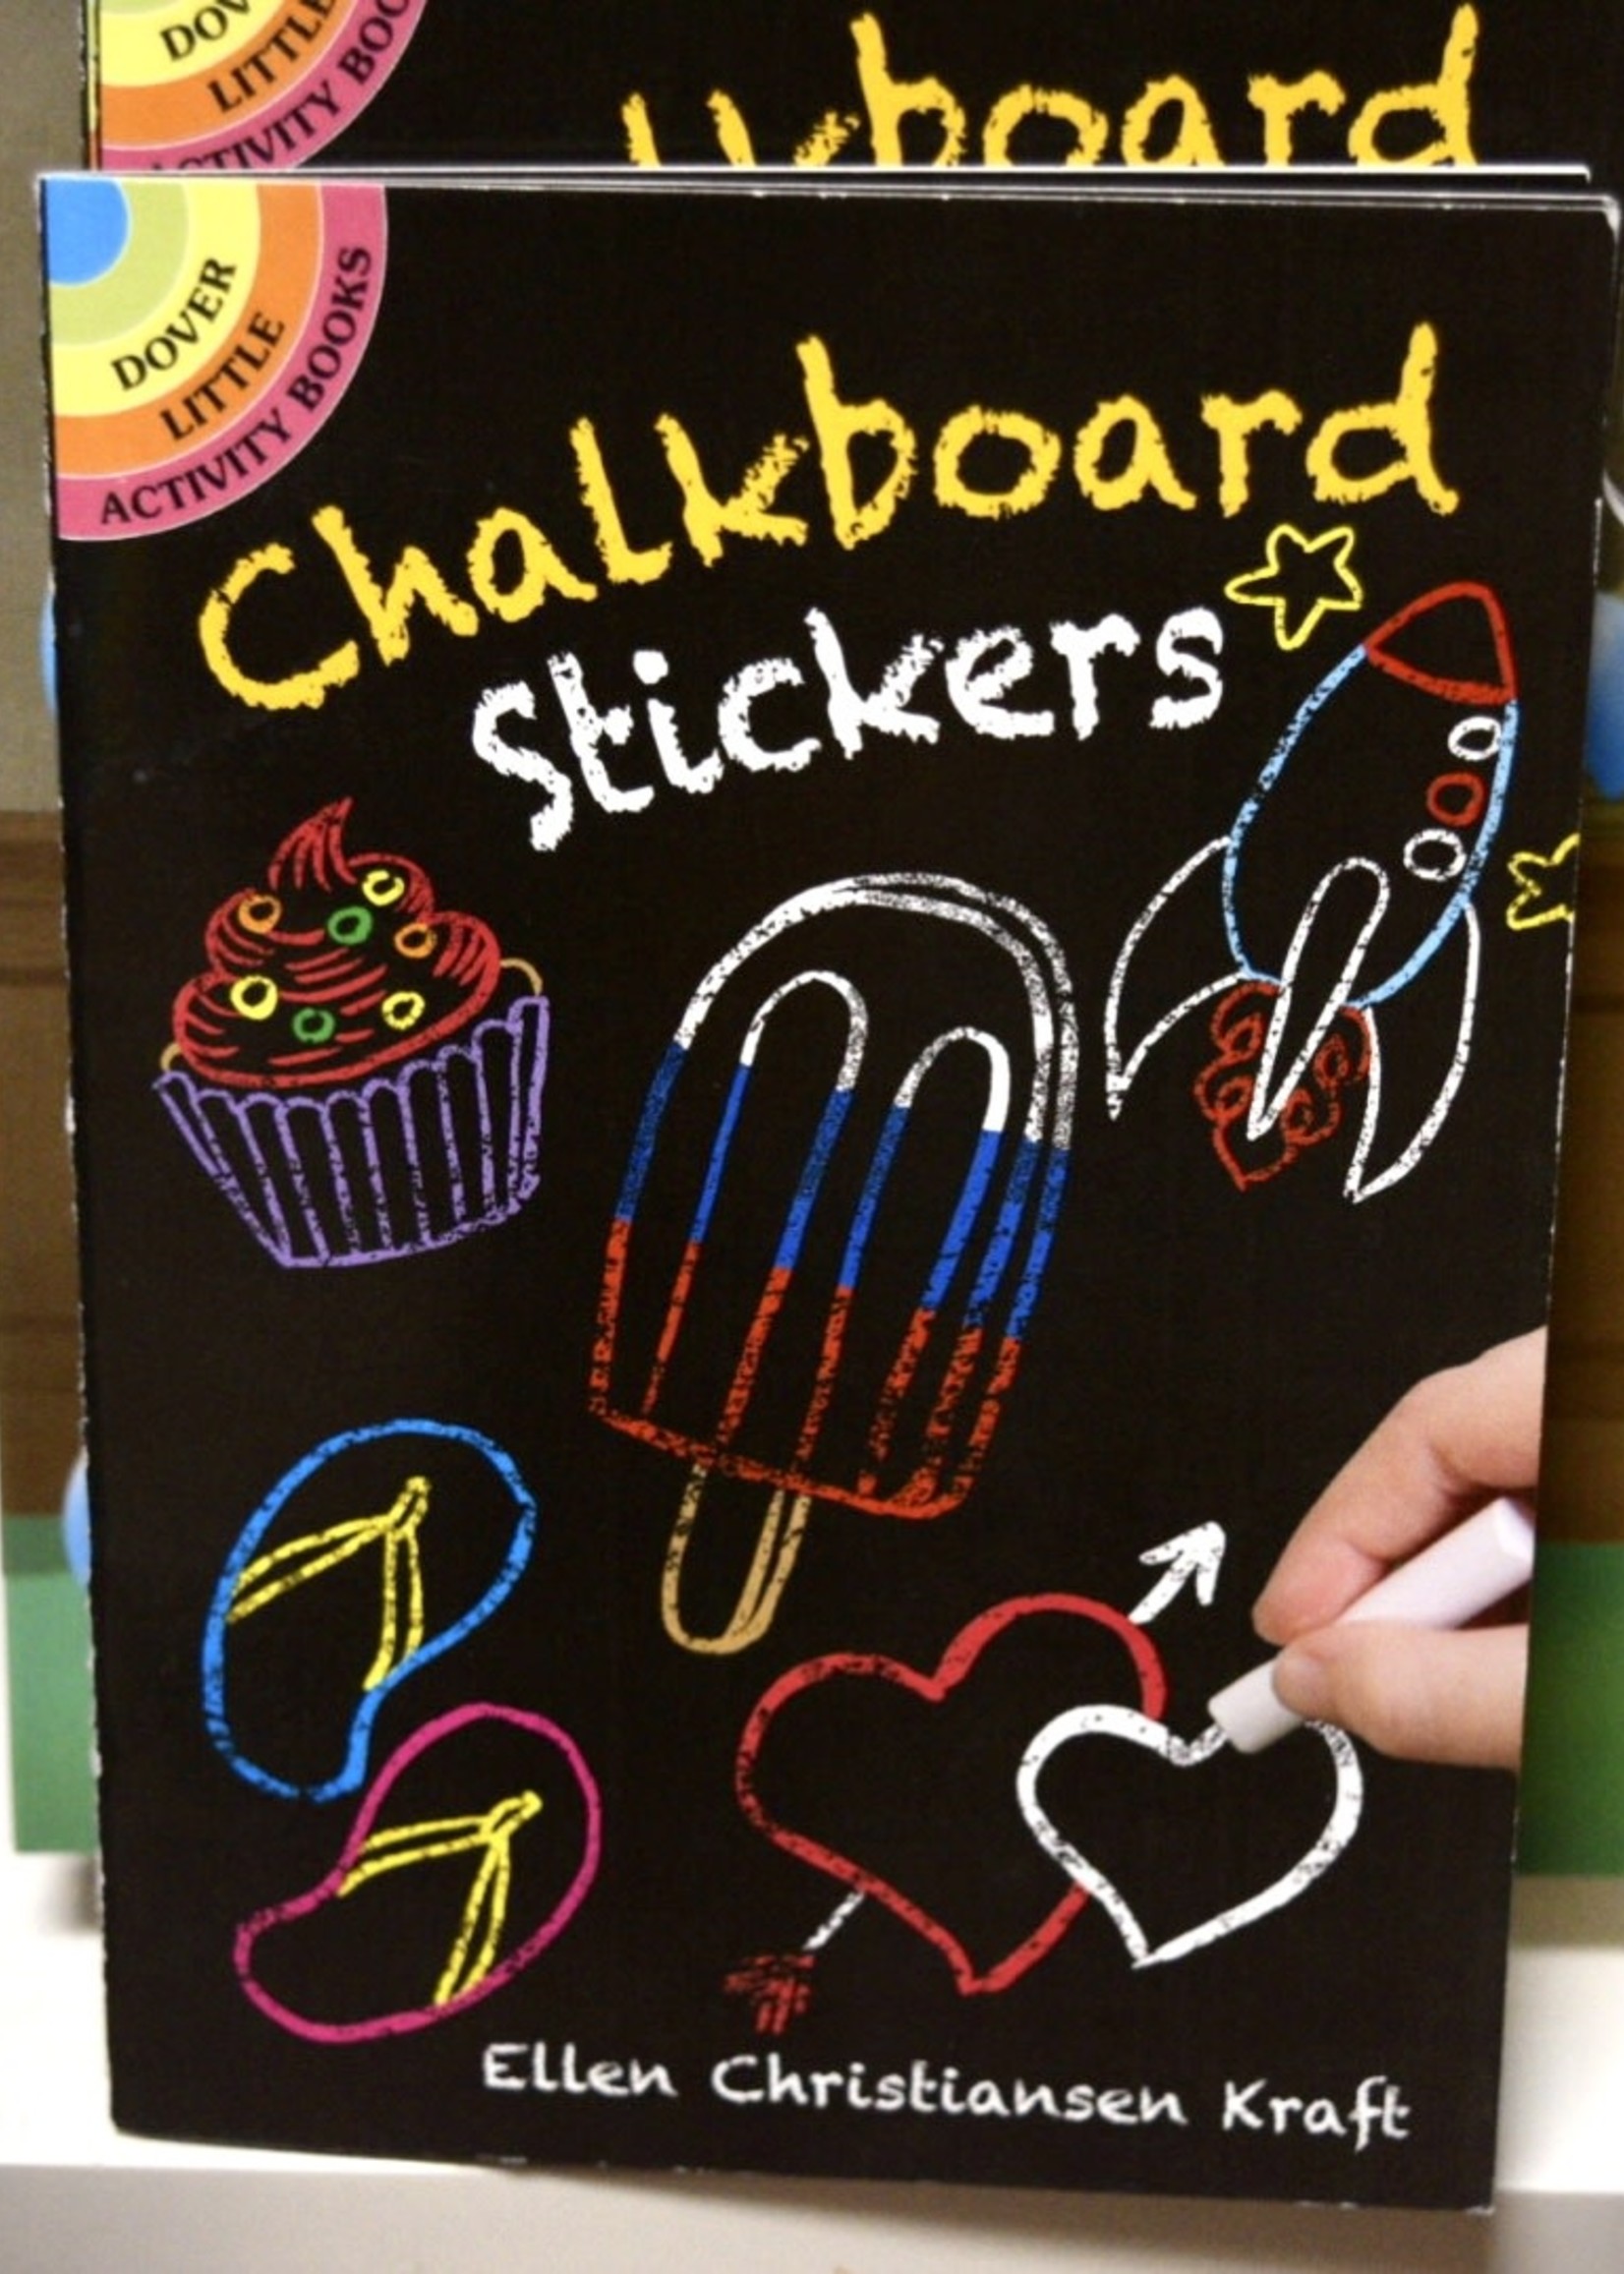 Book - Chalkboard Stickers